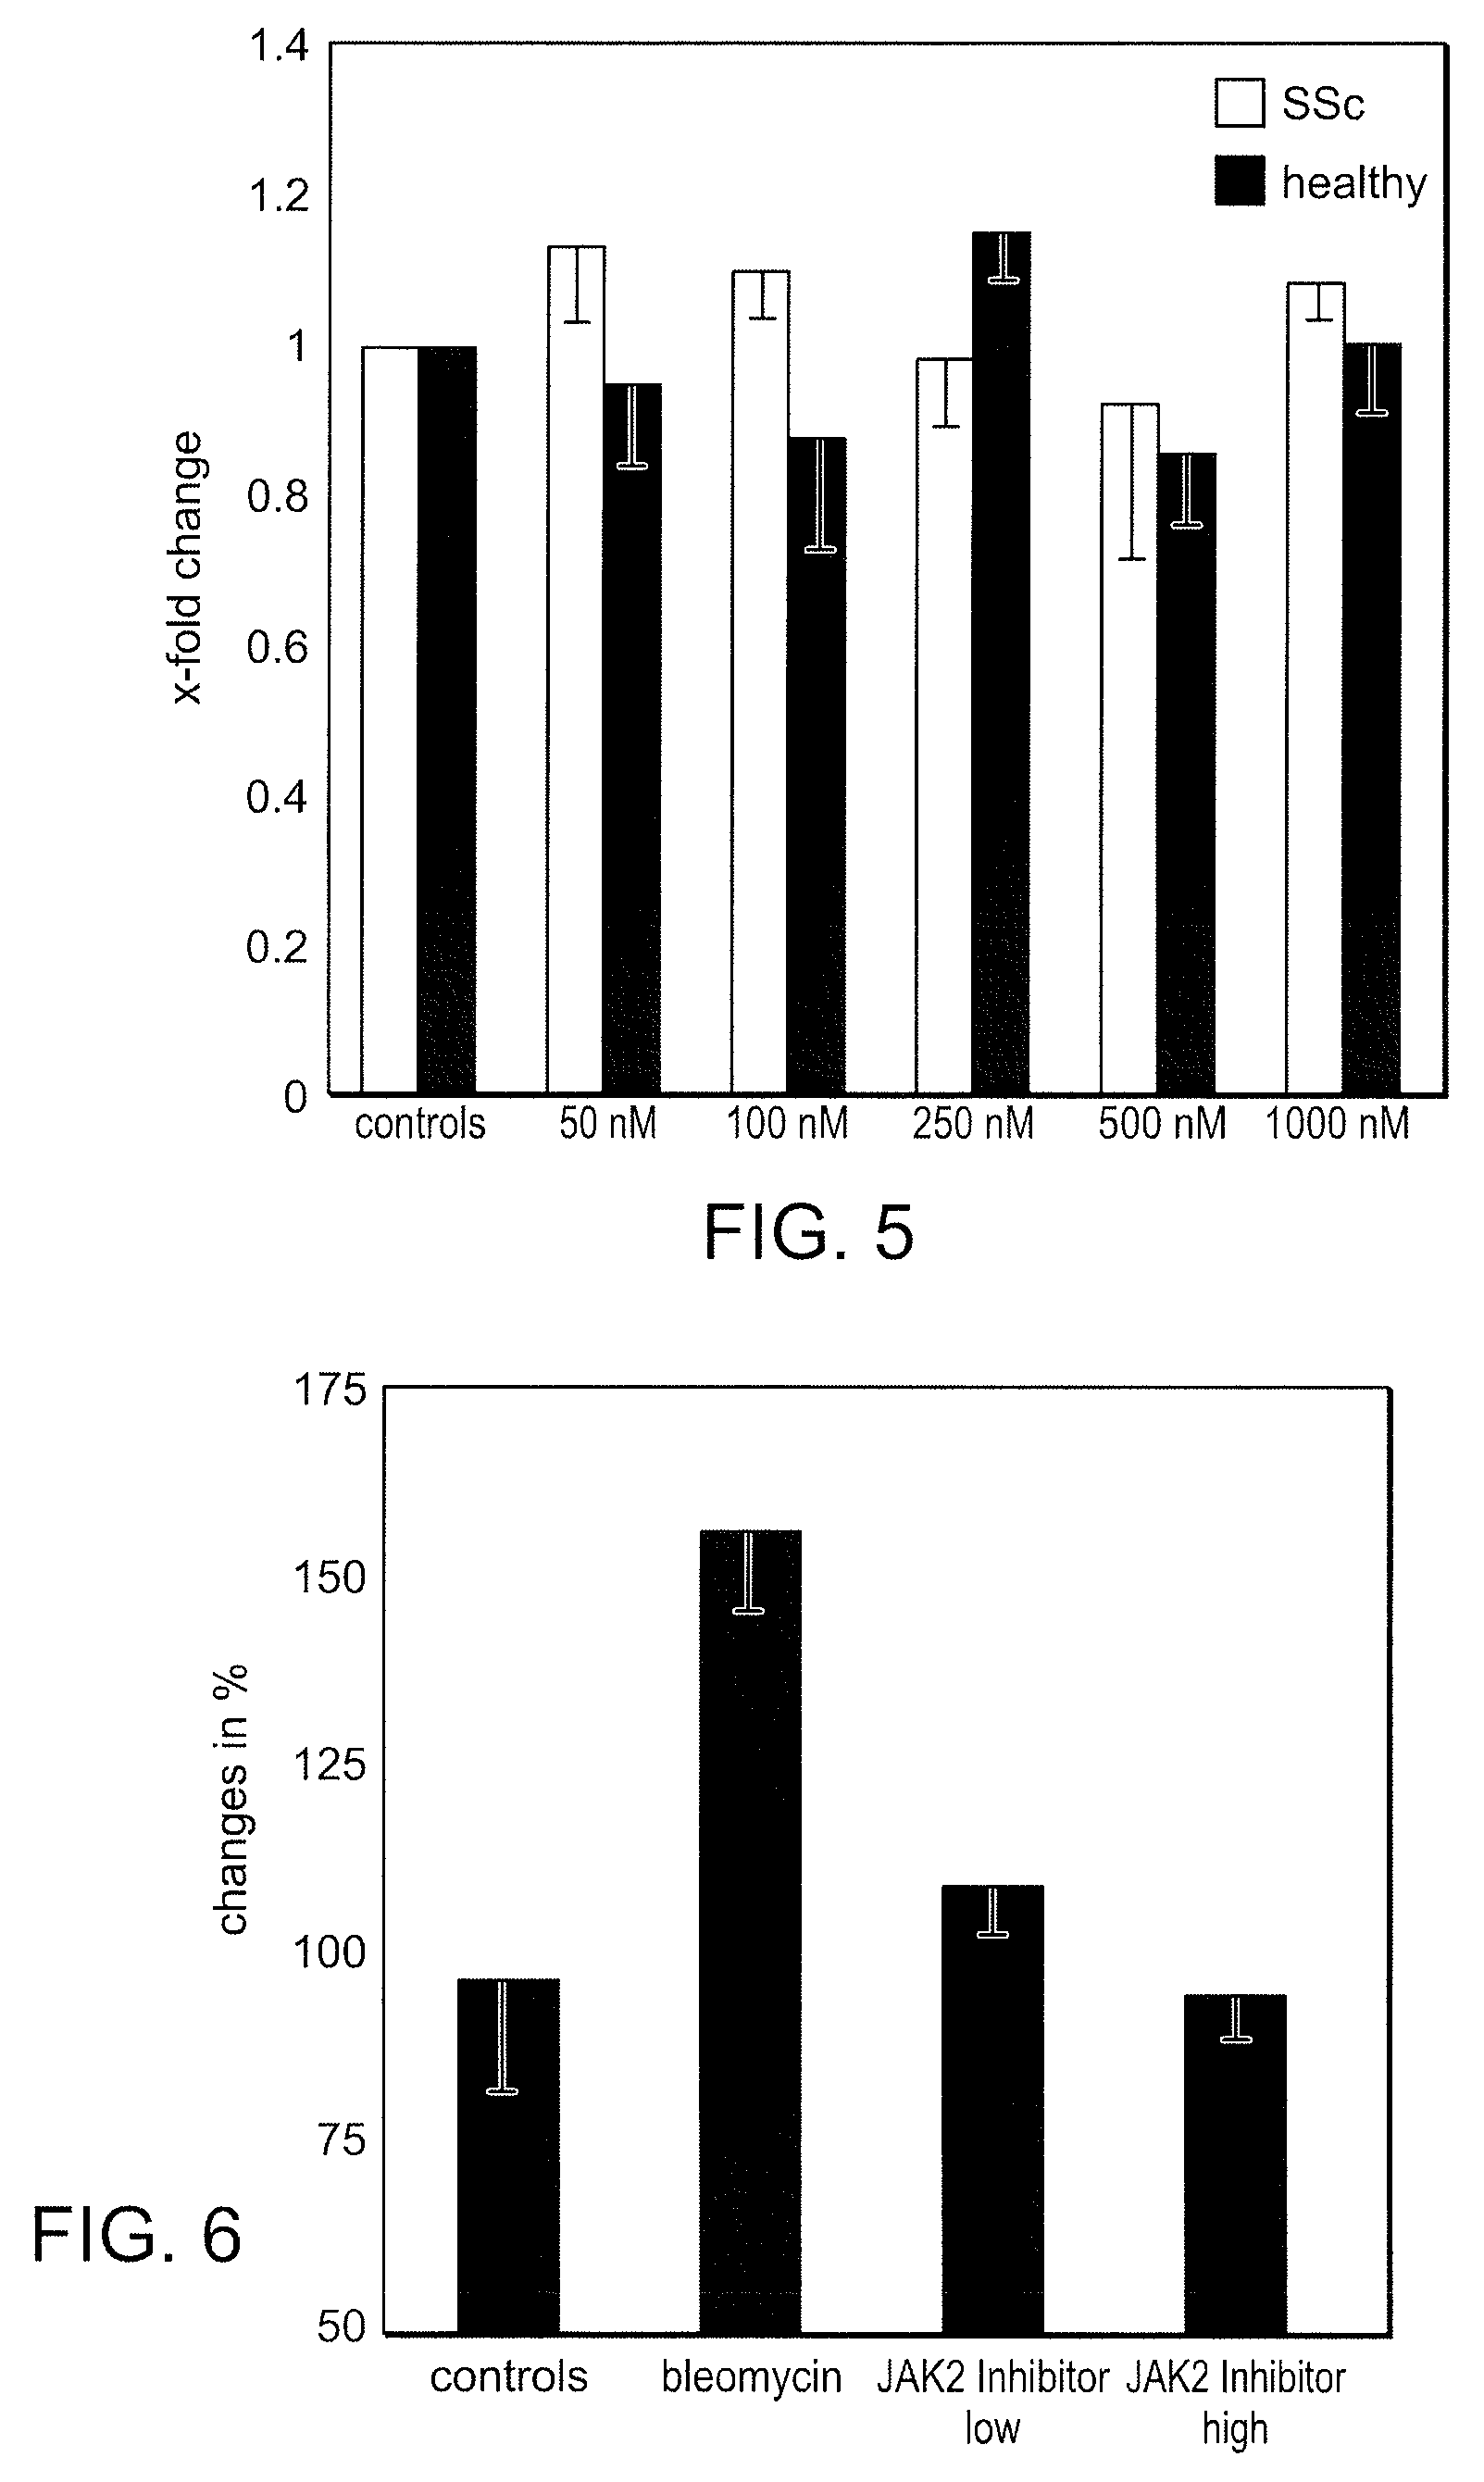 Use of bi-aryl meta-pyrimidine inhibitors of kinases